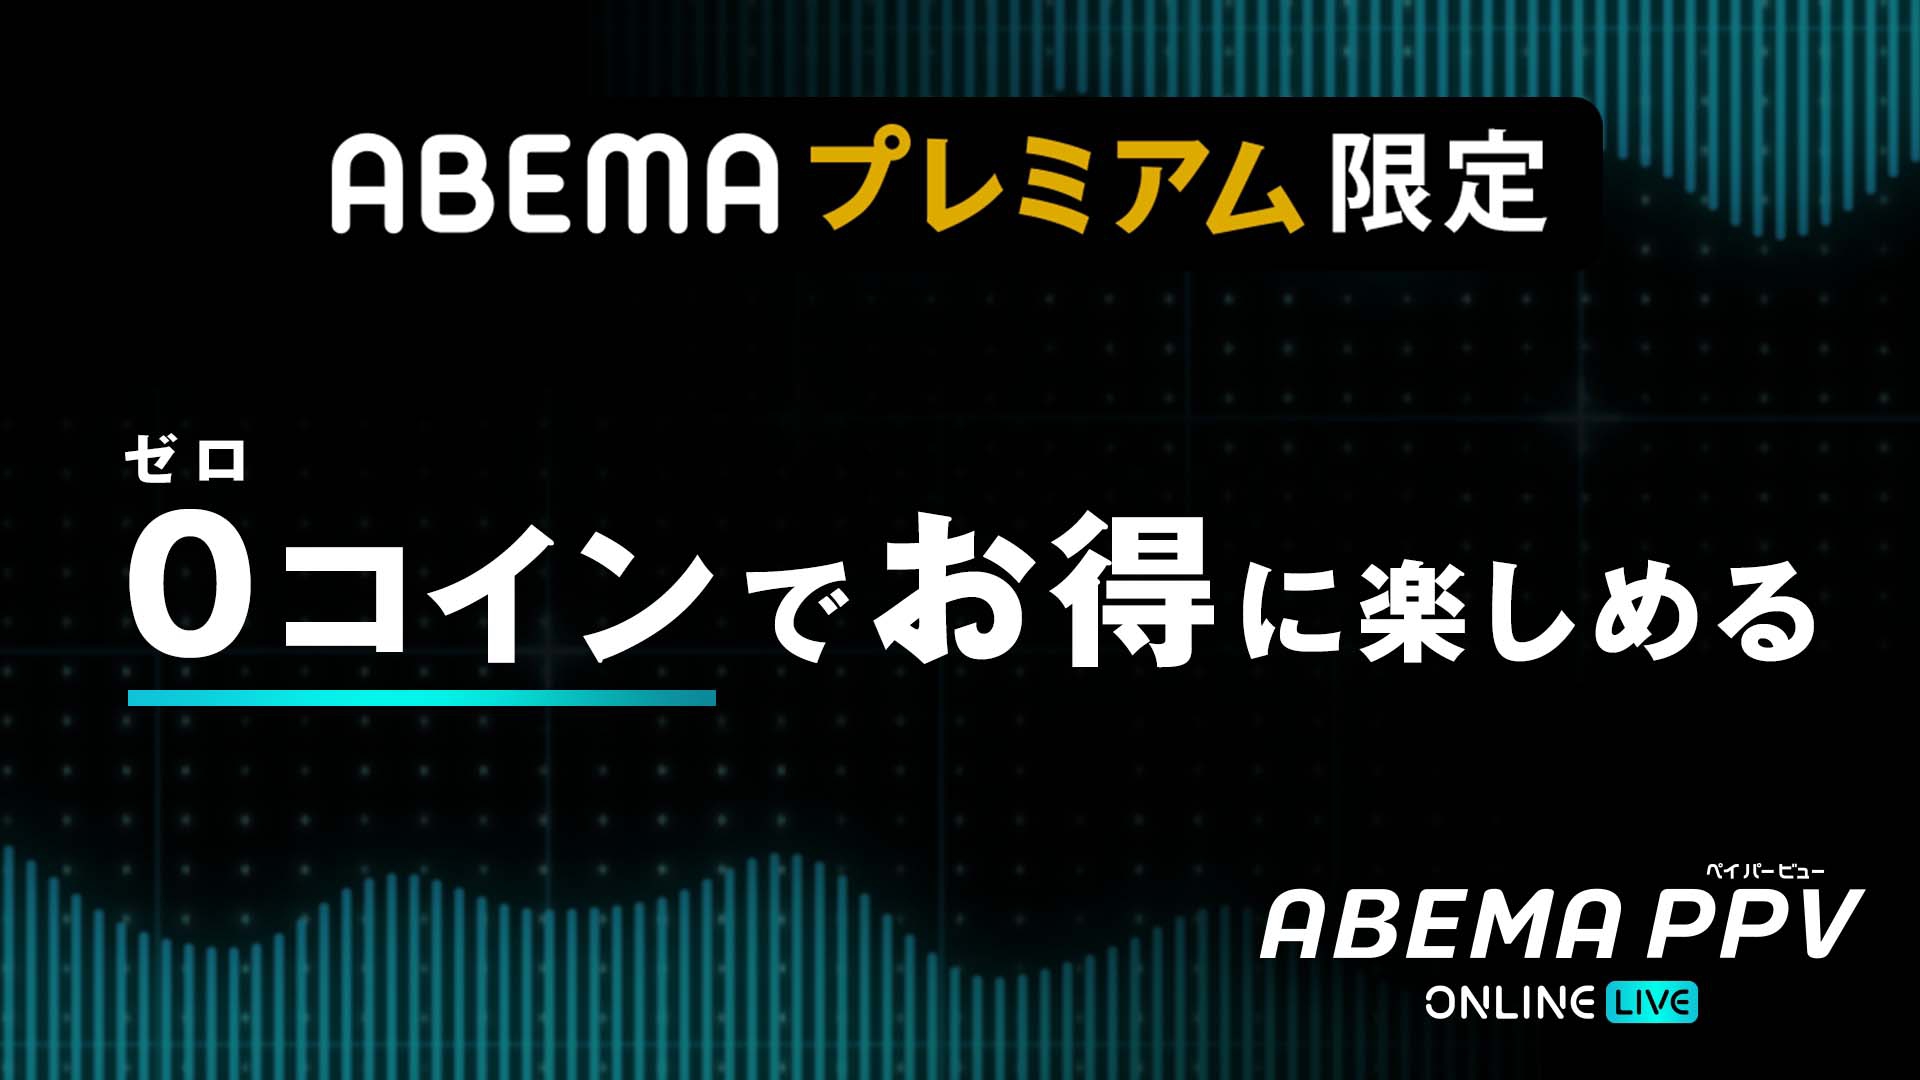 pancrase326 | ABEMA PPV ONLINE LIVE | ABEMA